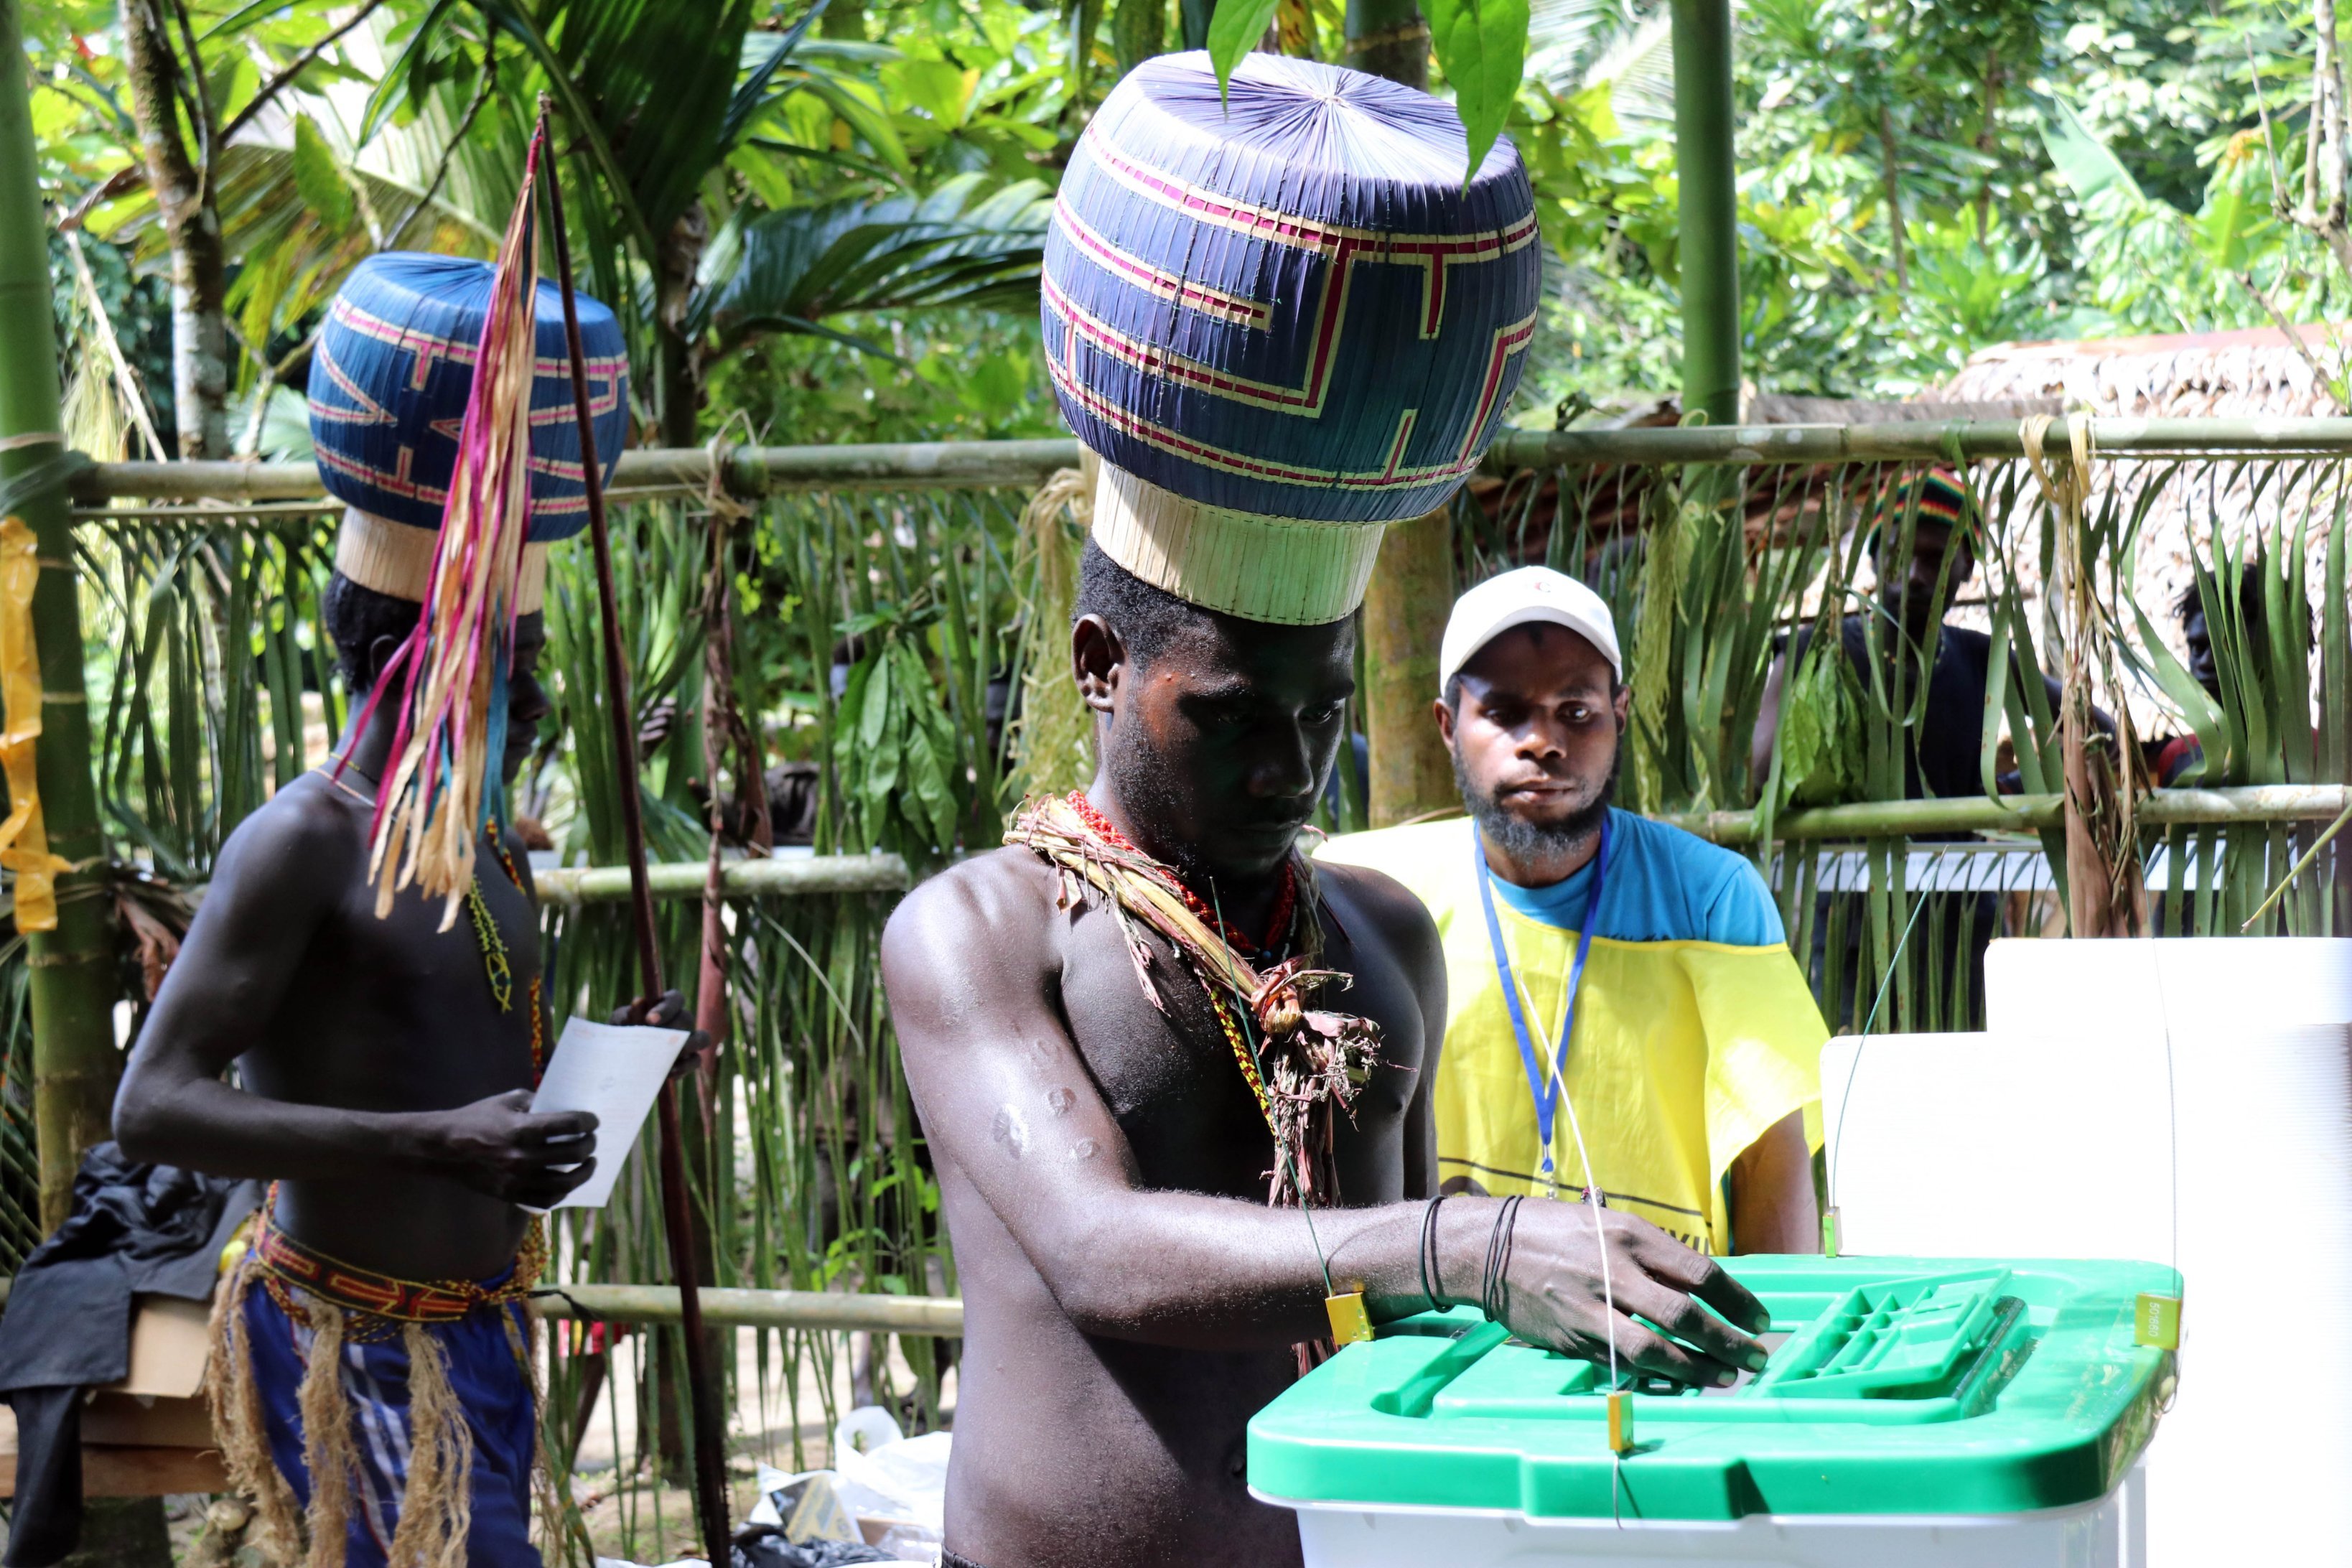 bougainville referendum - Bougainville Referendum Commission